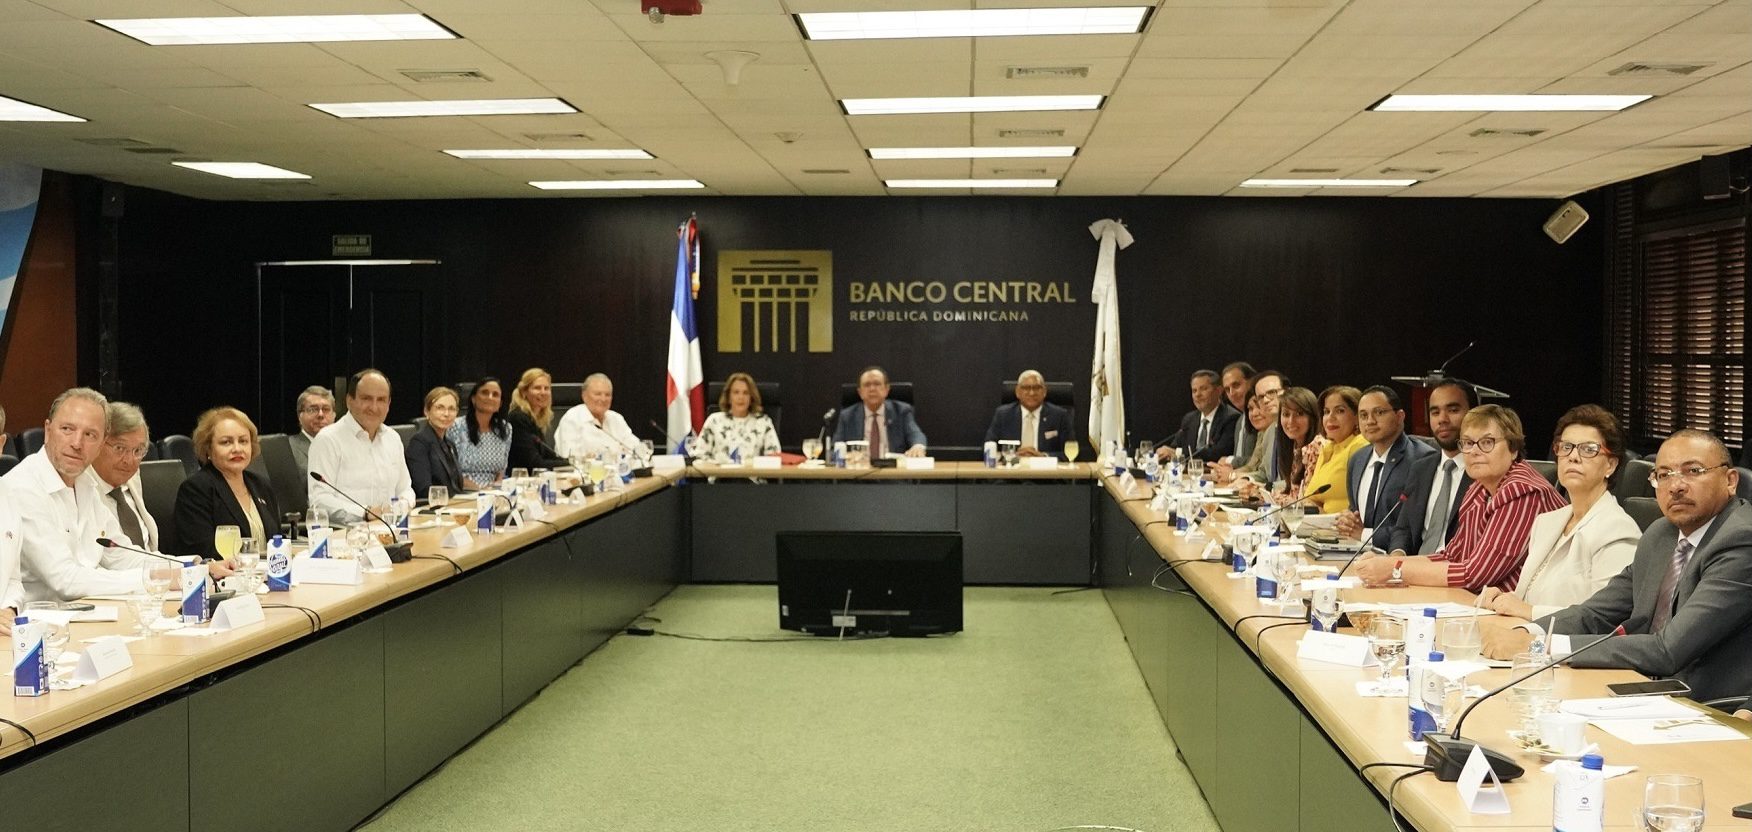 Banco Central y cuerpo diplomático pasan revista a economía dominicana